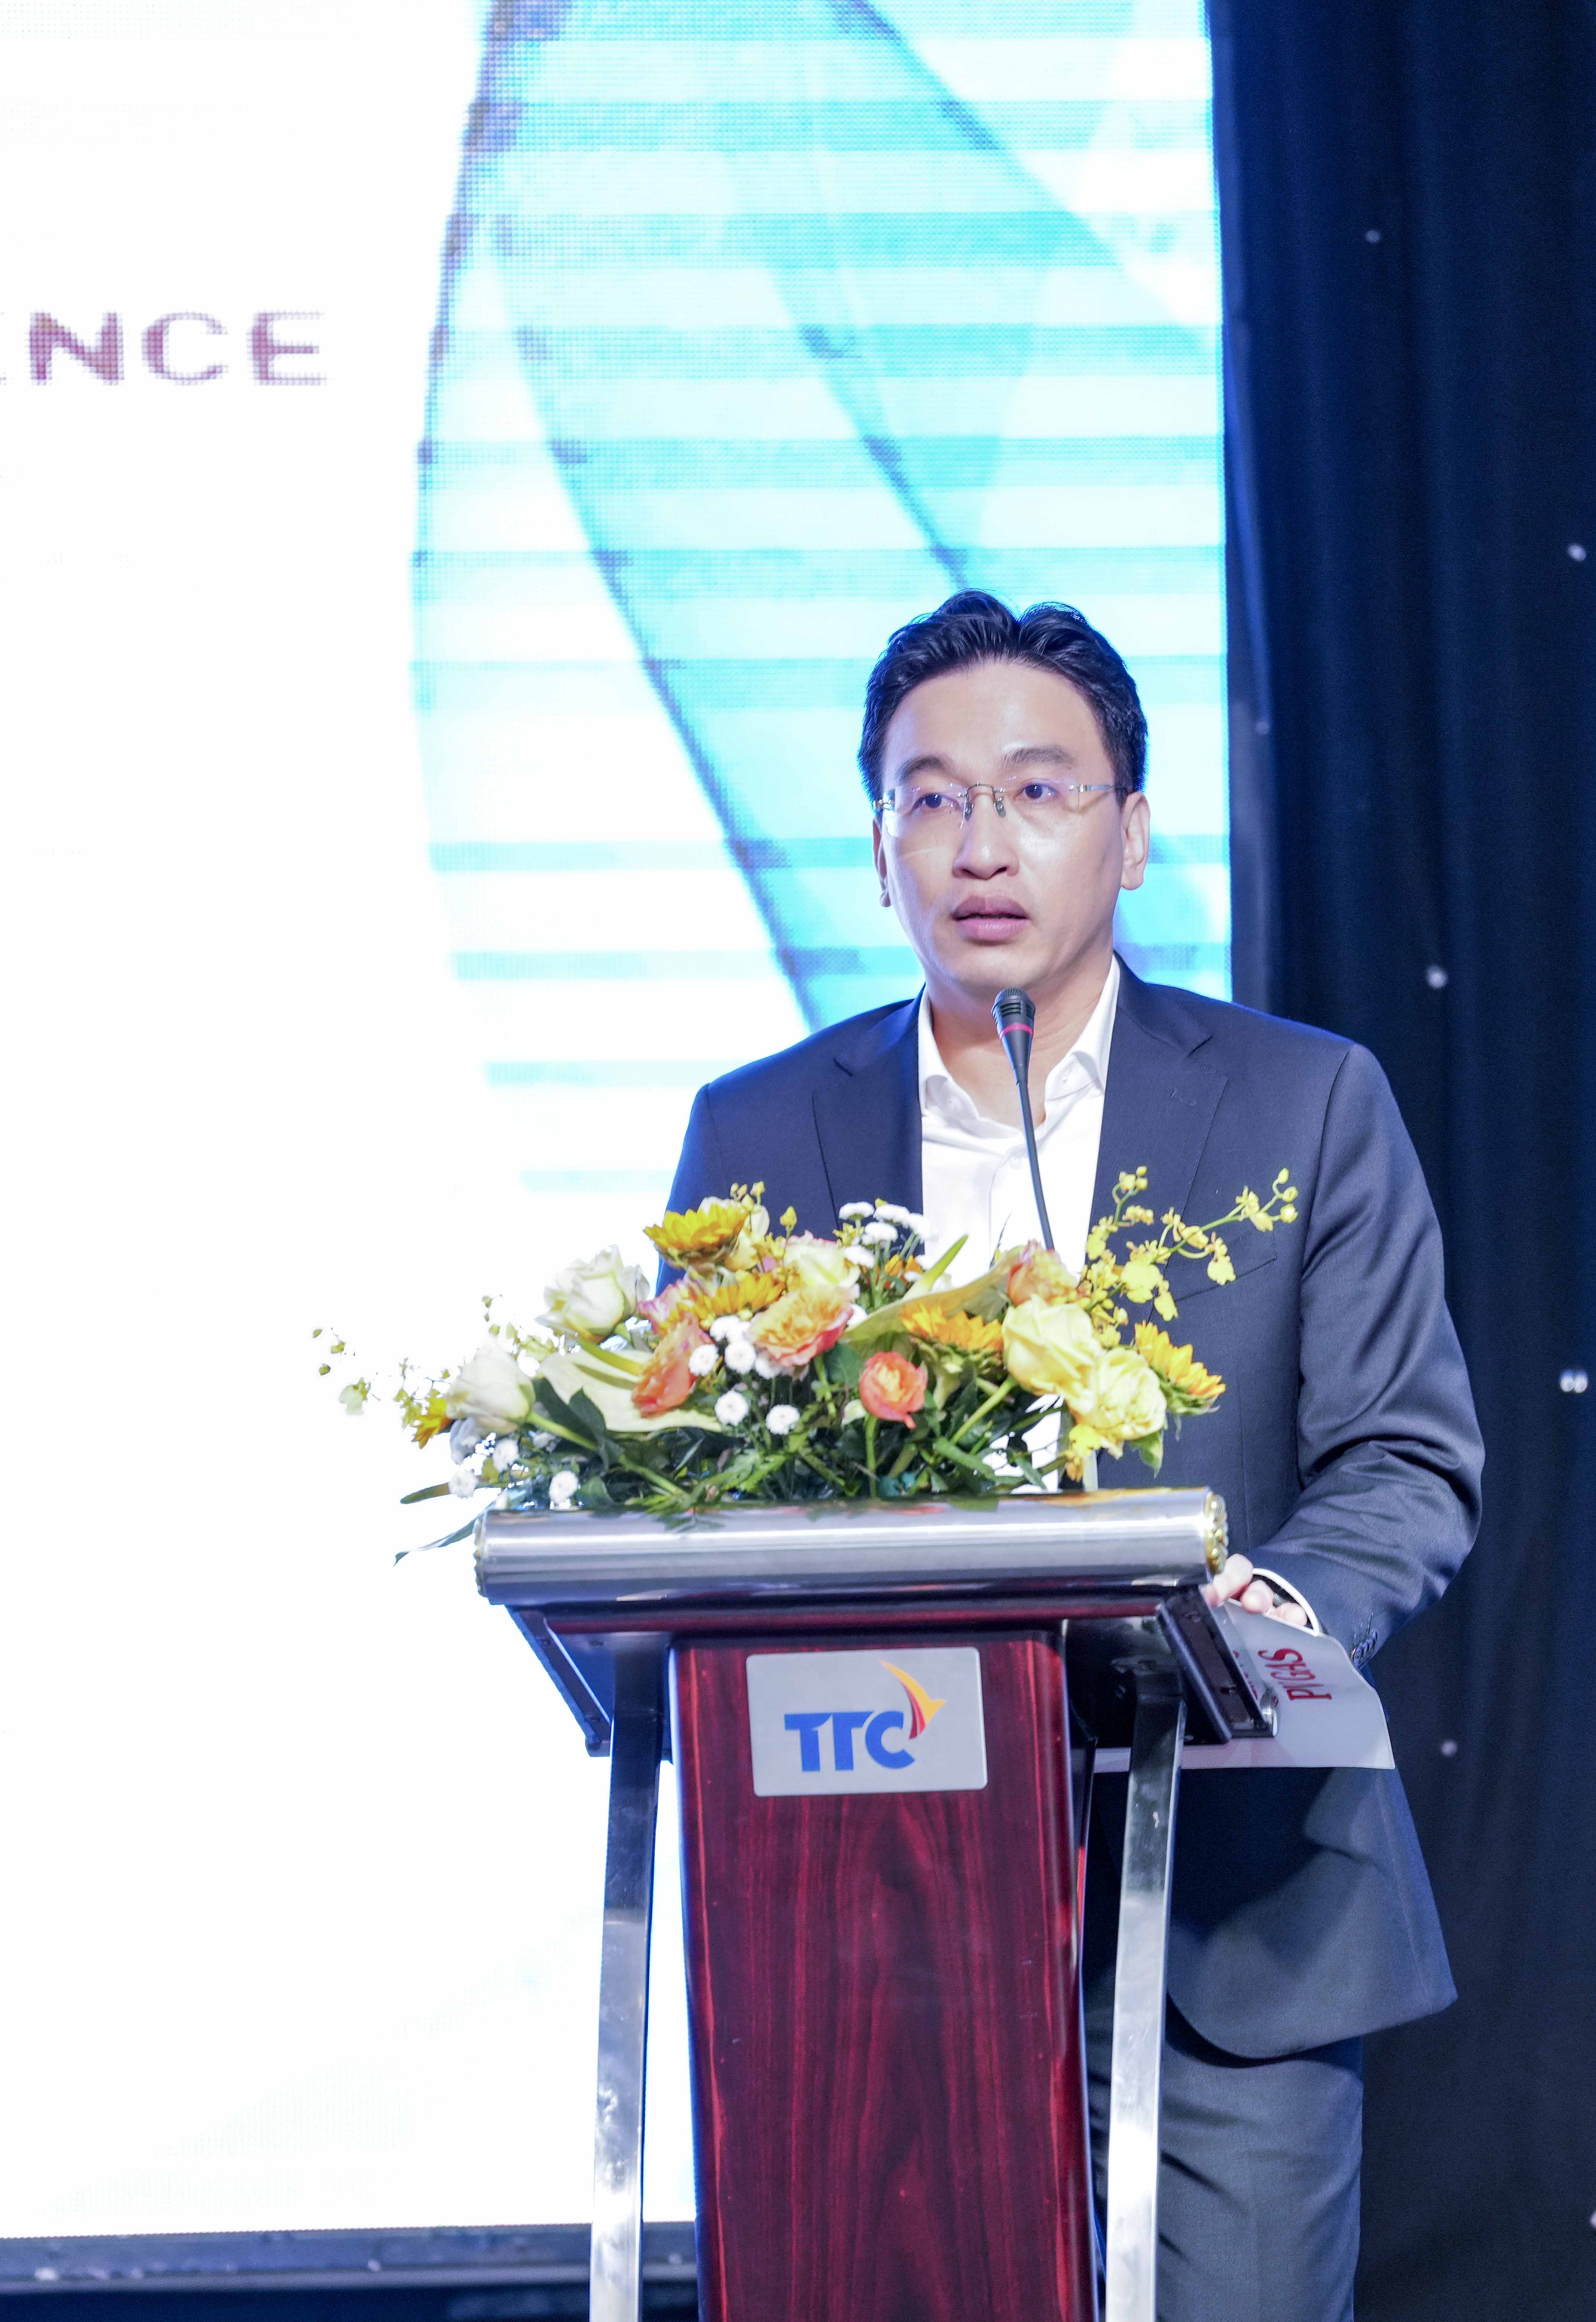 Lễ ra mắt Nhà đầu tư Chuỗi Dự án Khí – Điện Sơn Mỹ, Bình Thuận